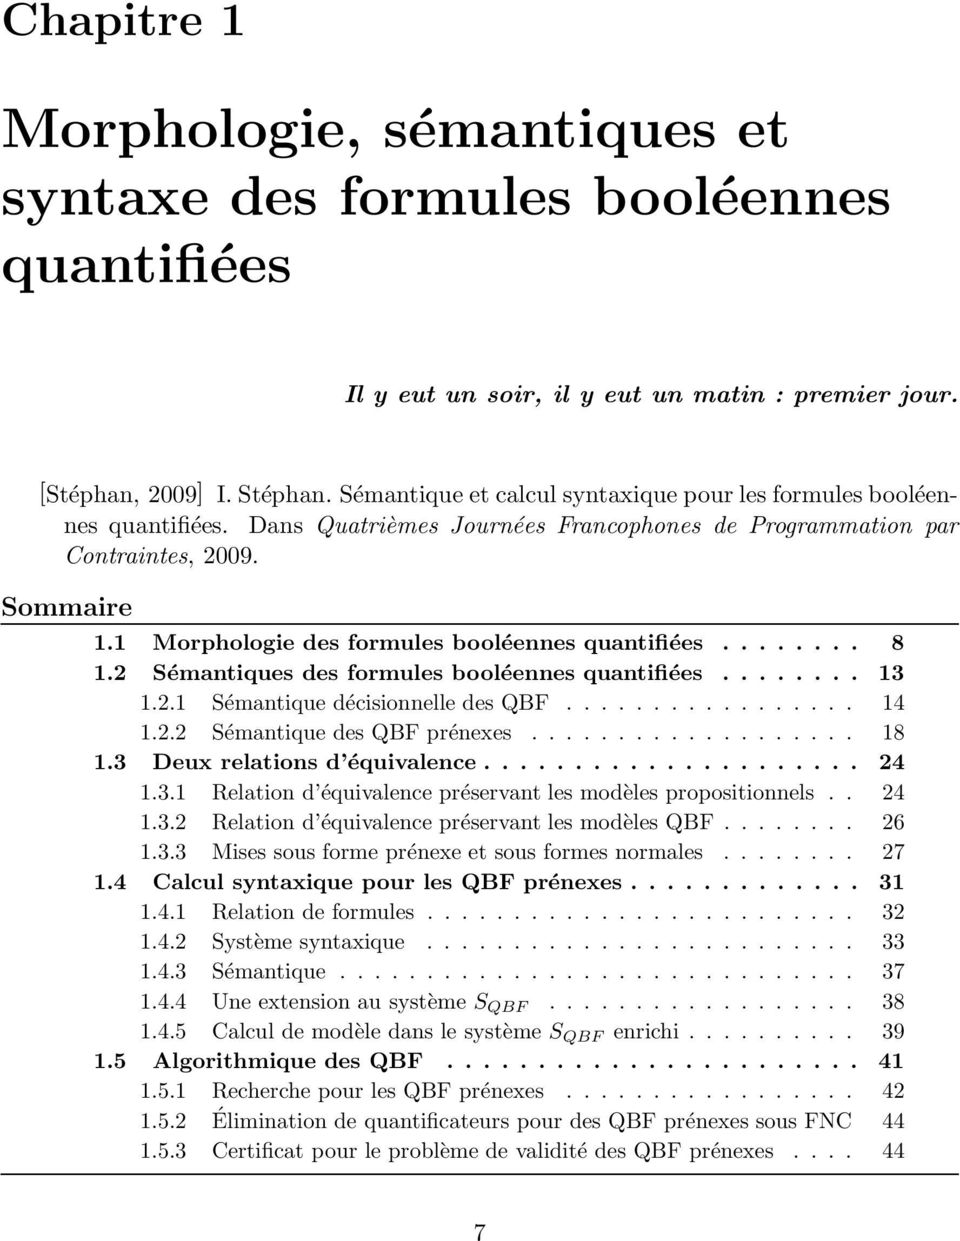 1 Morphologie des formules booléennes quantifiées........ 8 1.2 Sémantiques des formules booléennes quantifiées........ 13 1.2.1 Sémantique décisionnelle des QBF................. 14 1.2.2 Sémantique des QBF prénexes.